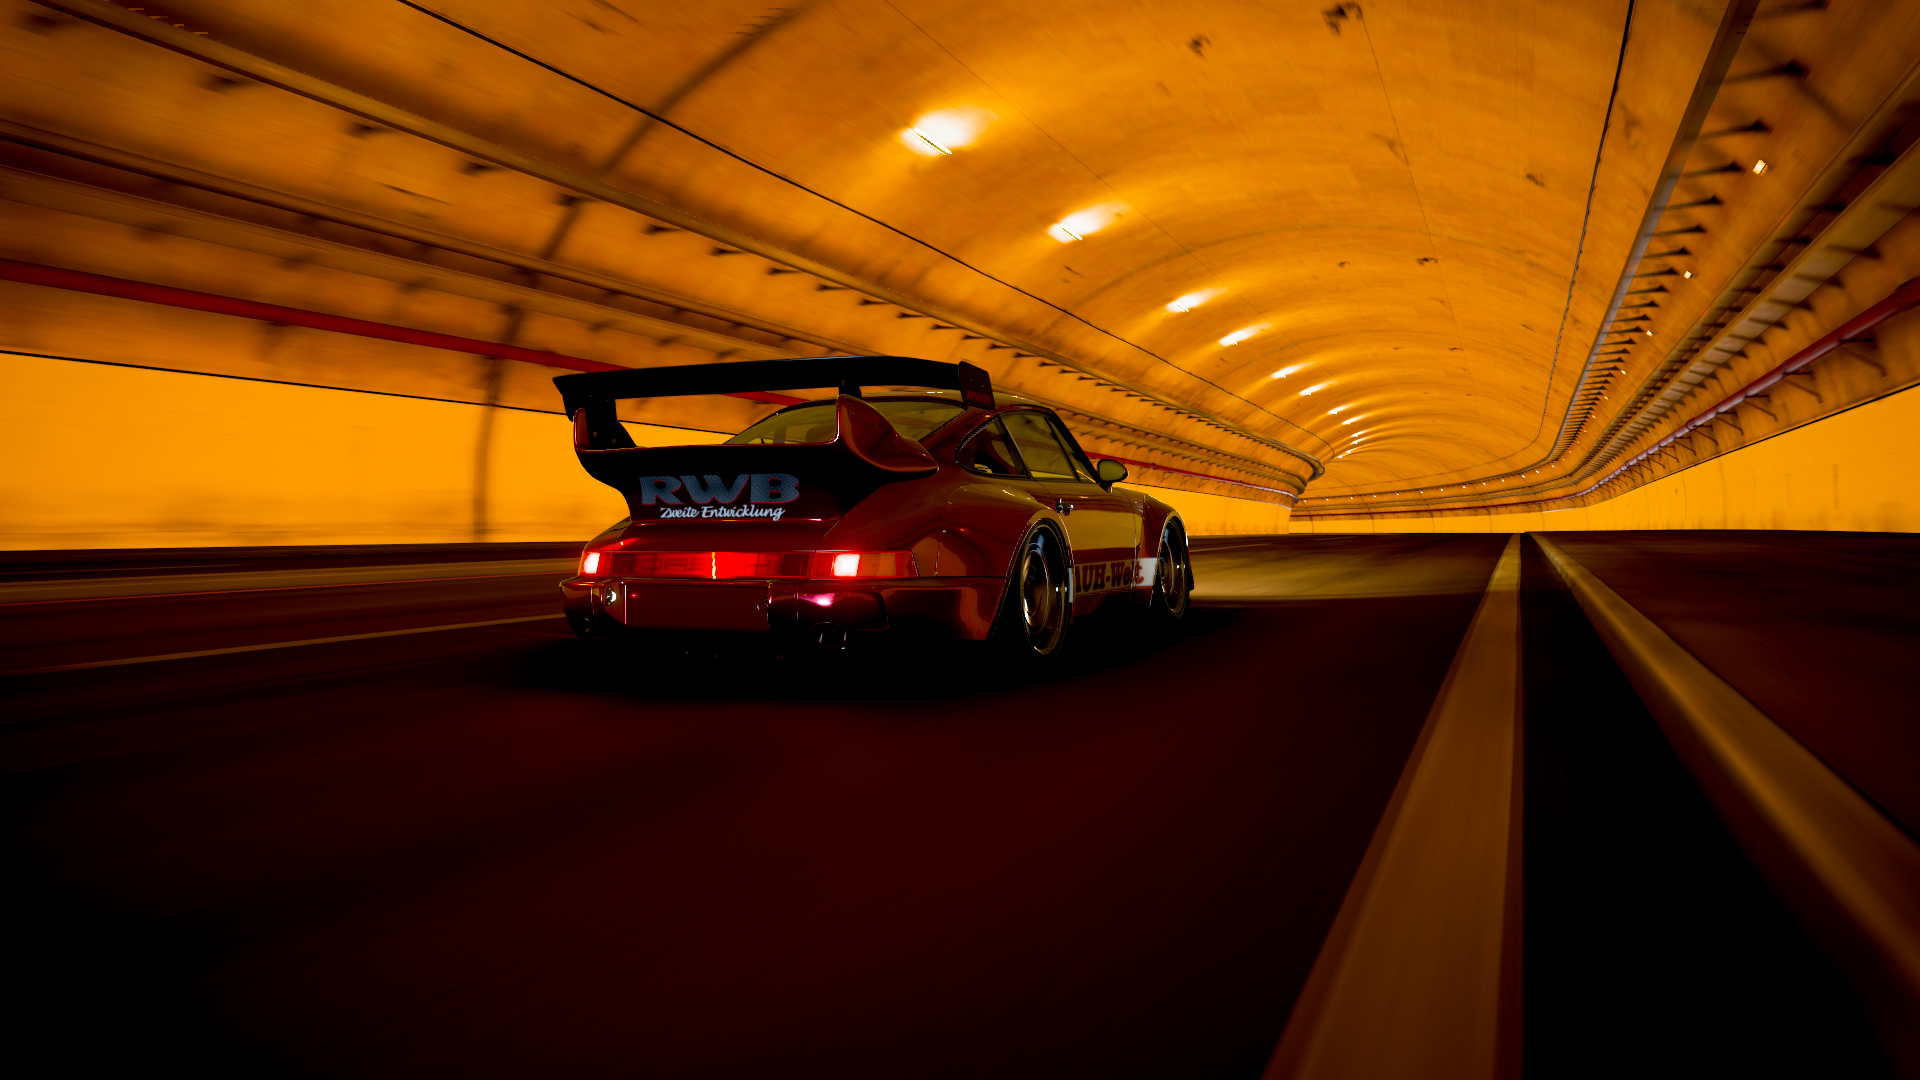 Porsche Porsche 964 RWB Porsche 911 RWB Rauh Welt Forza Horizon 5 Widebody Red Tunnel Night 1920x1080